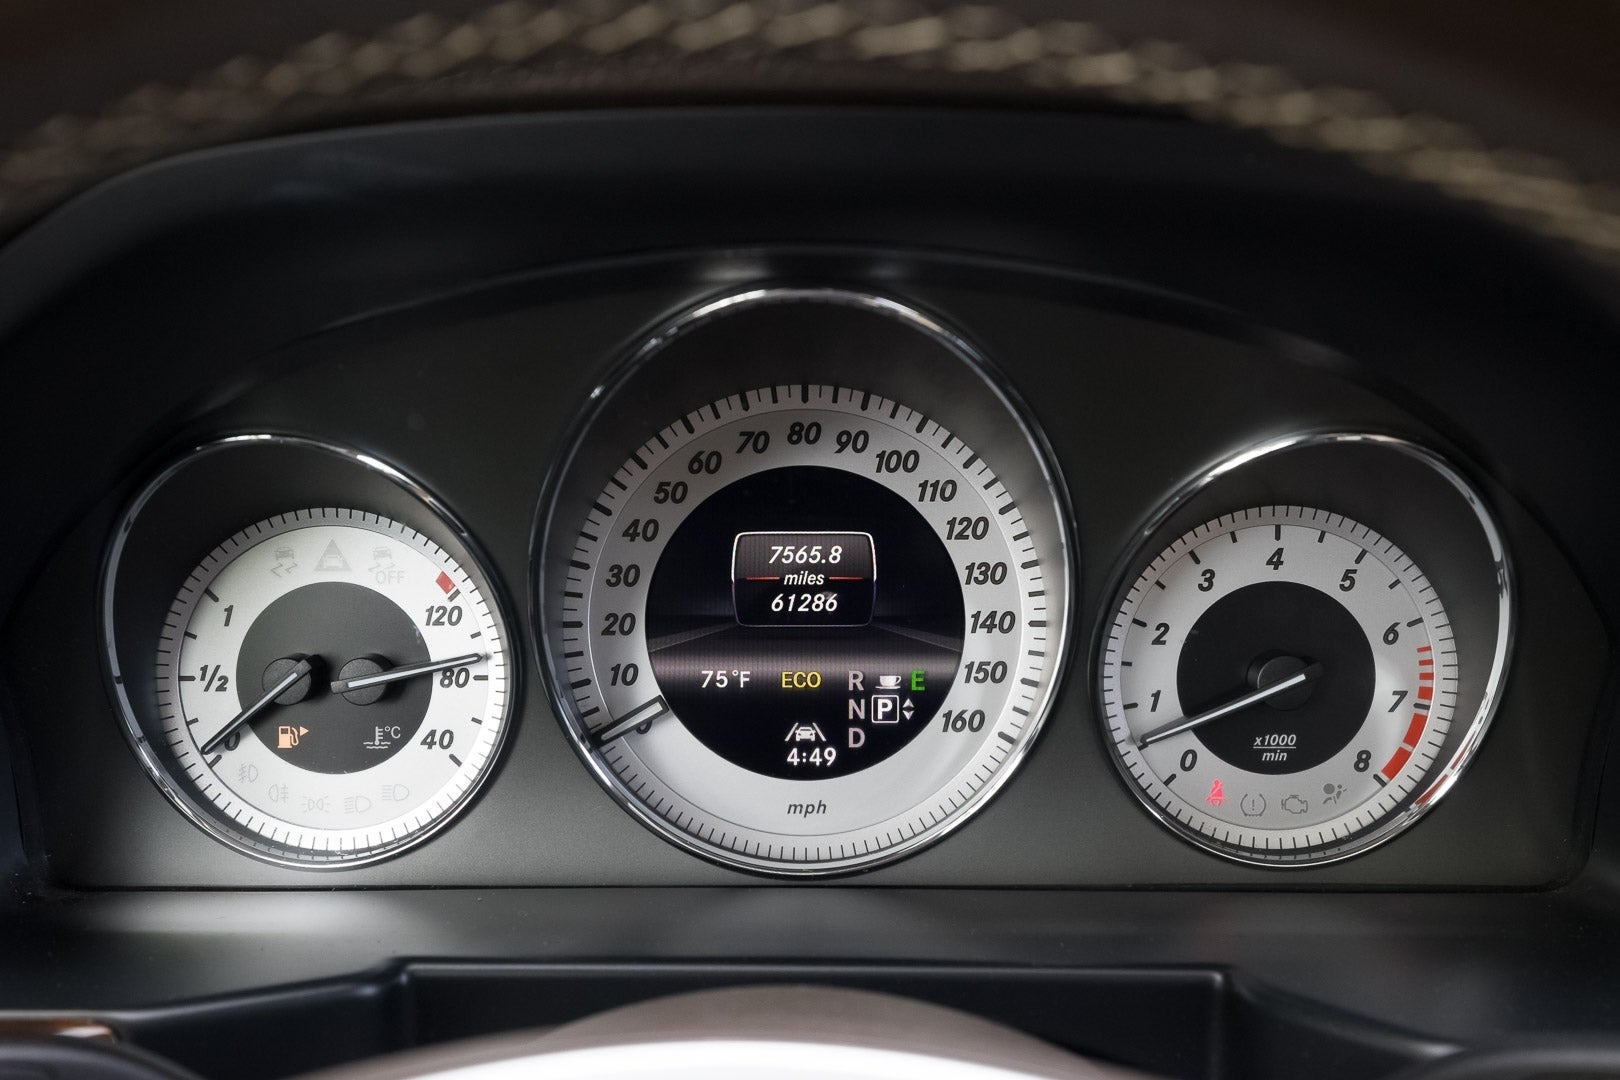 2013 Mercedes-Benz GLK GLK 350 4MATIC®